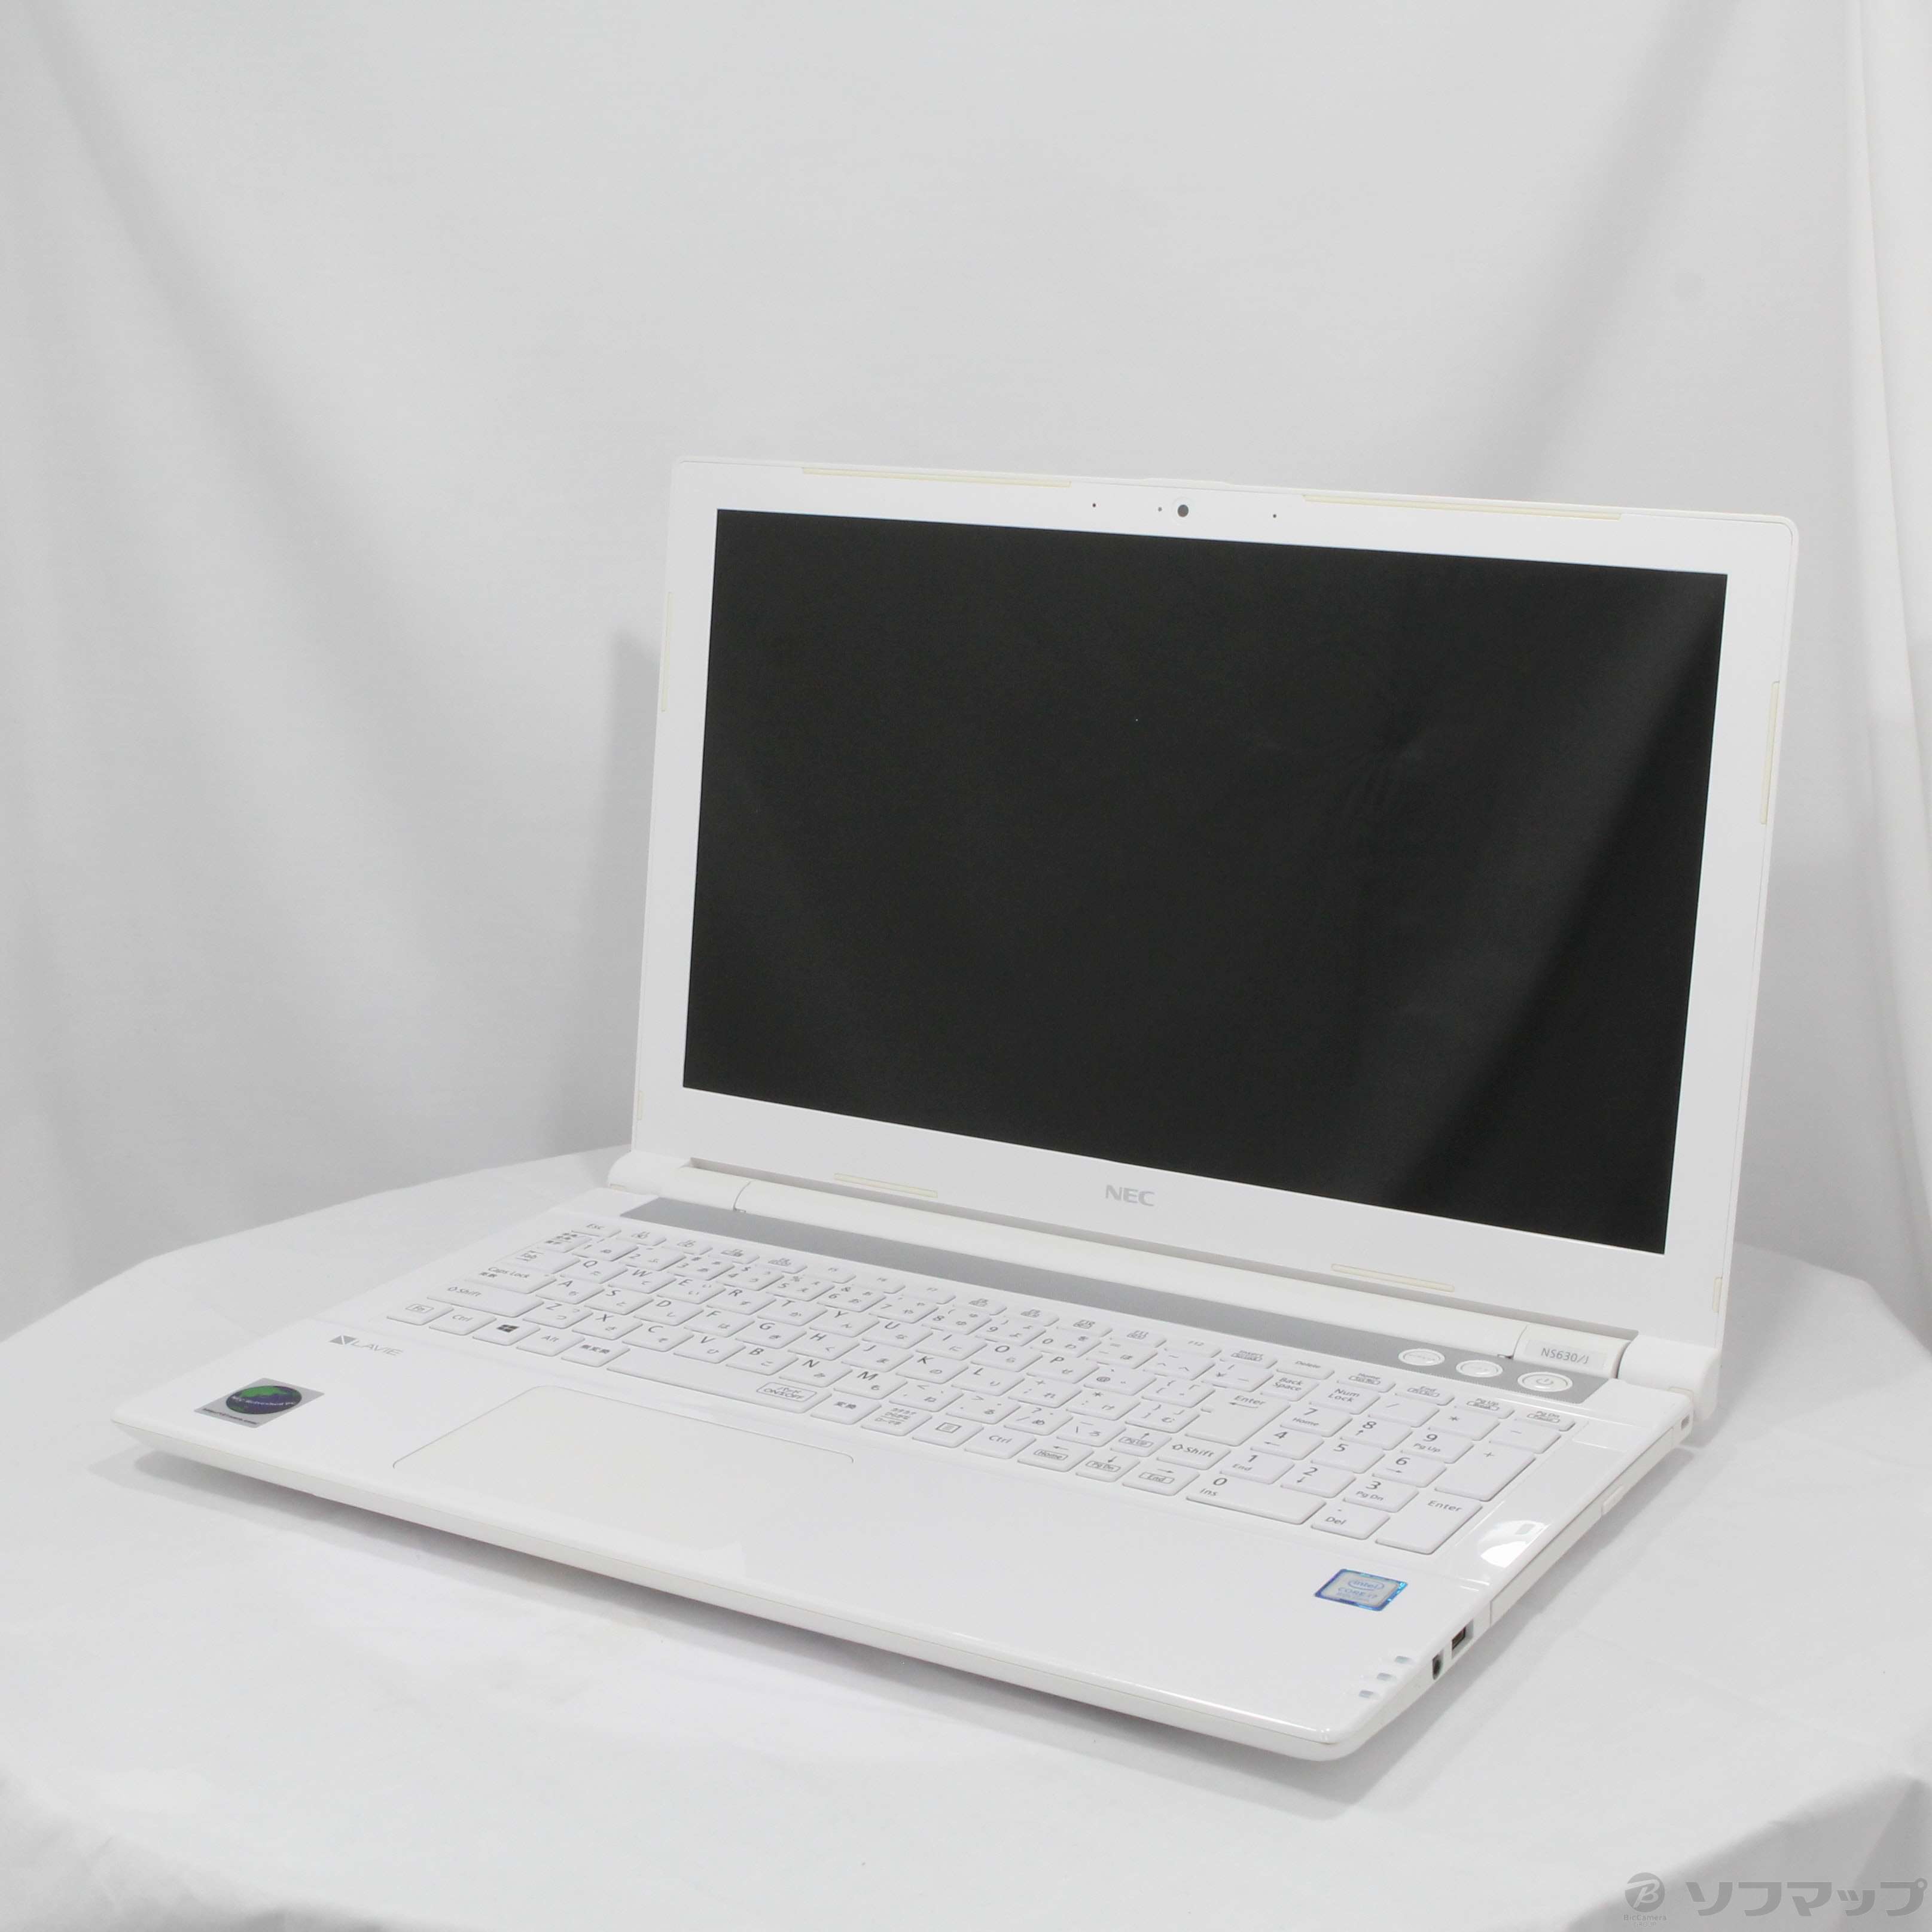 【中古】LAVIE Note Standard PC-NS630JAW エクストラホワイト 